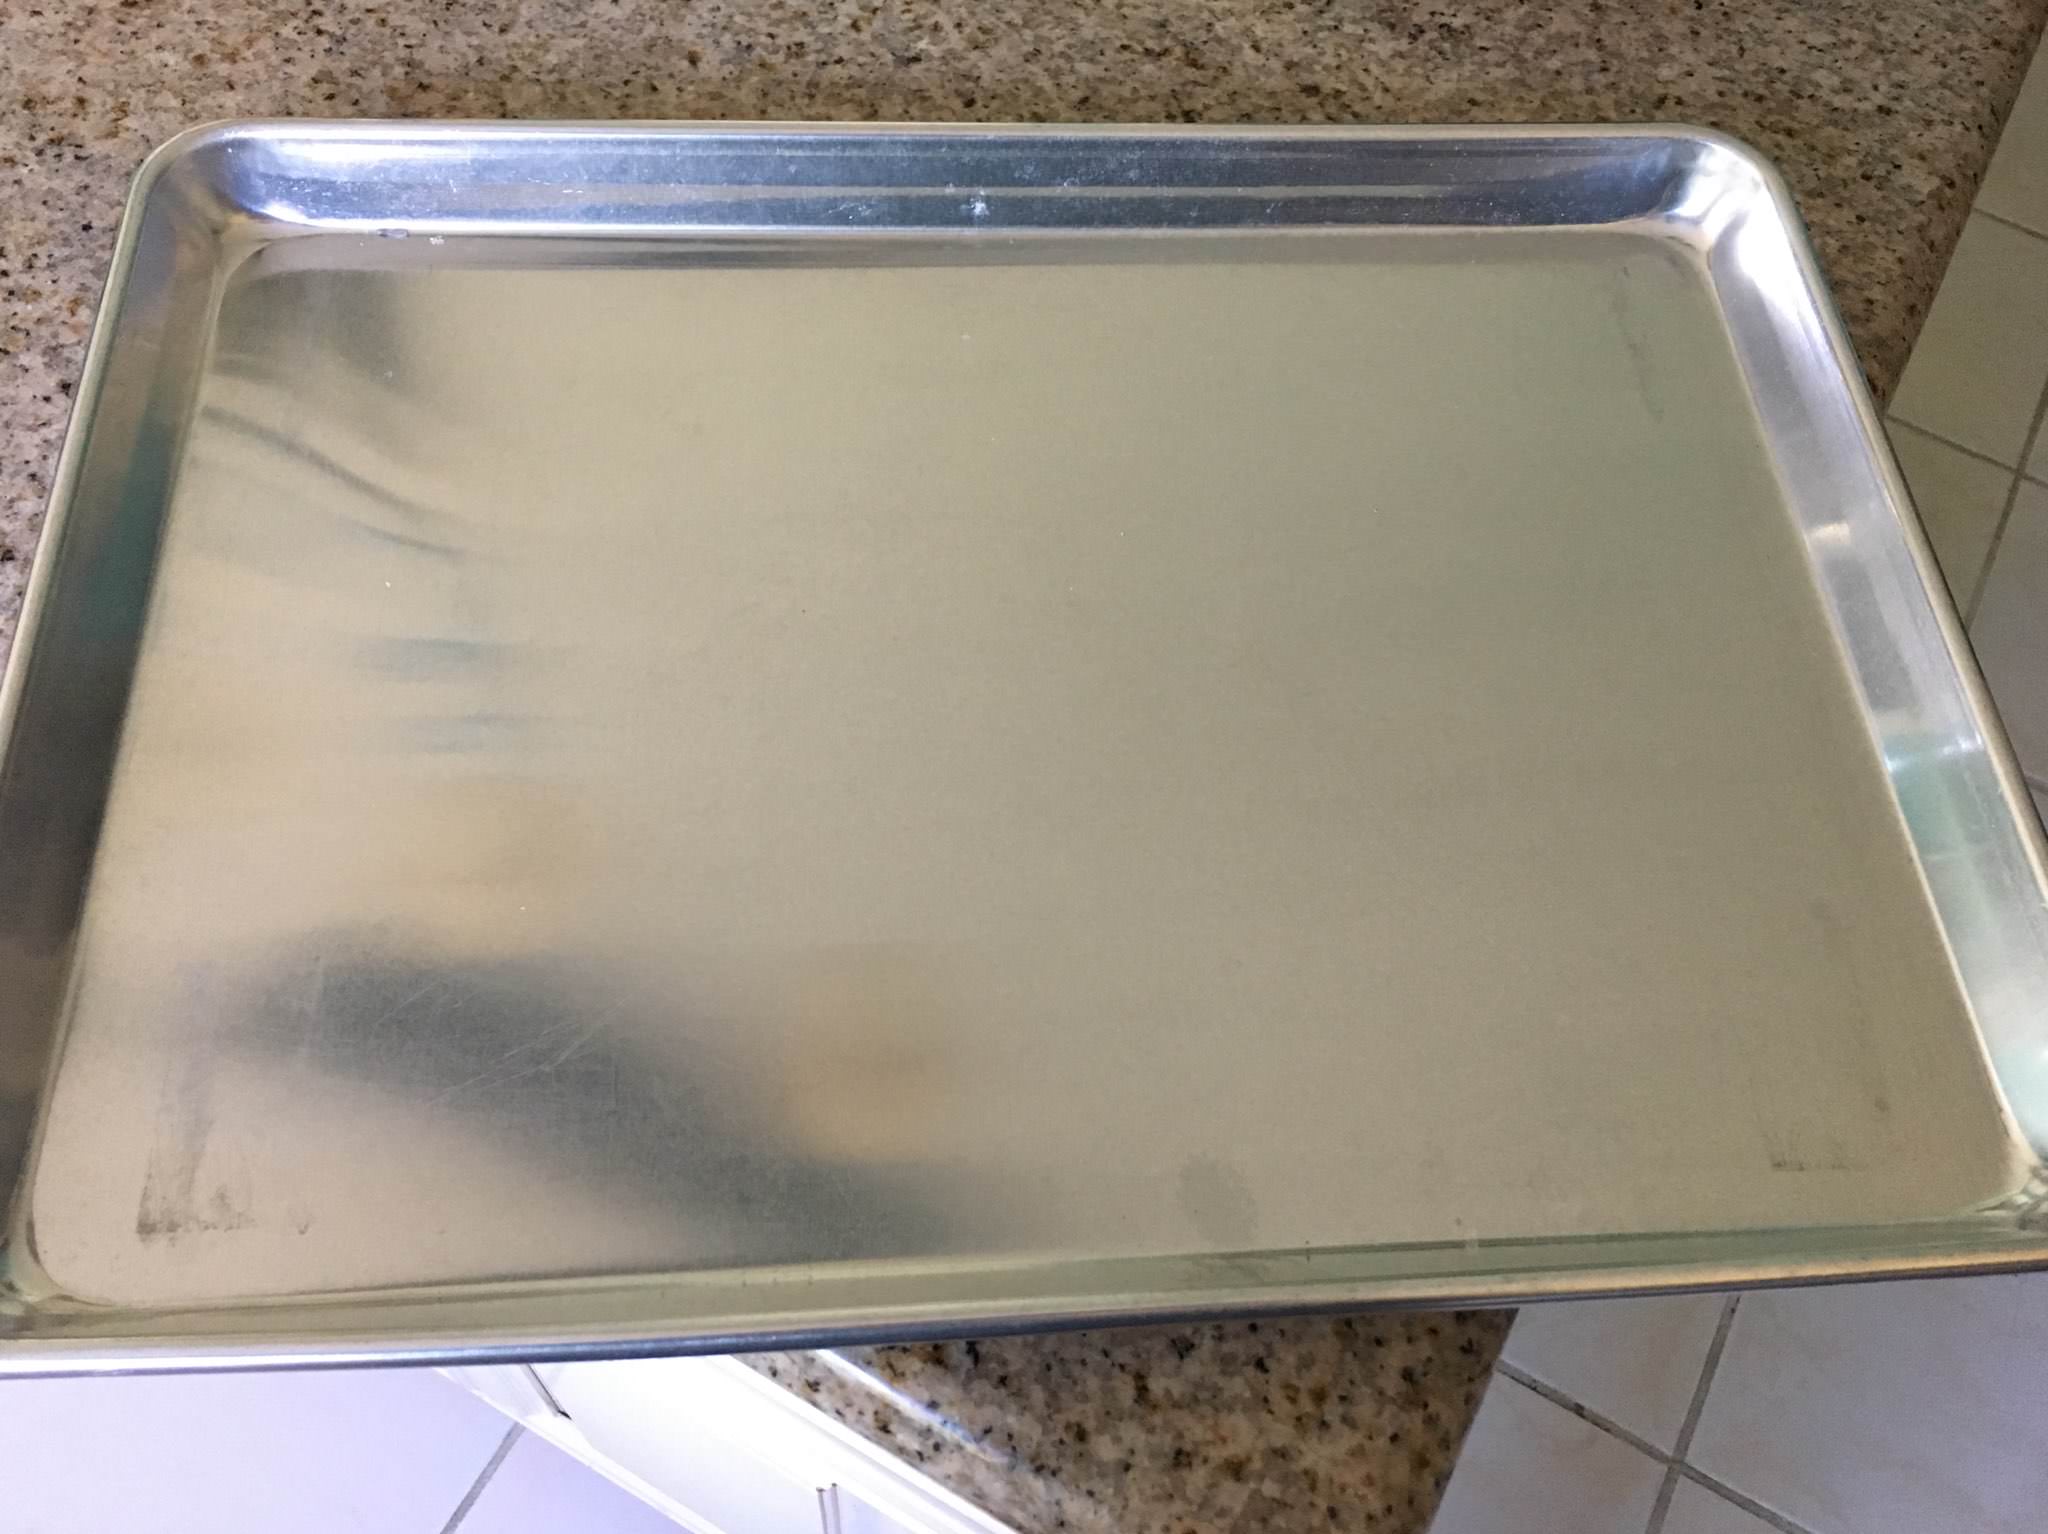 clean baking sheet